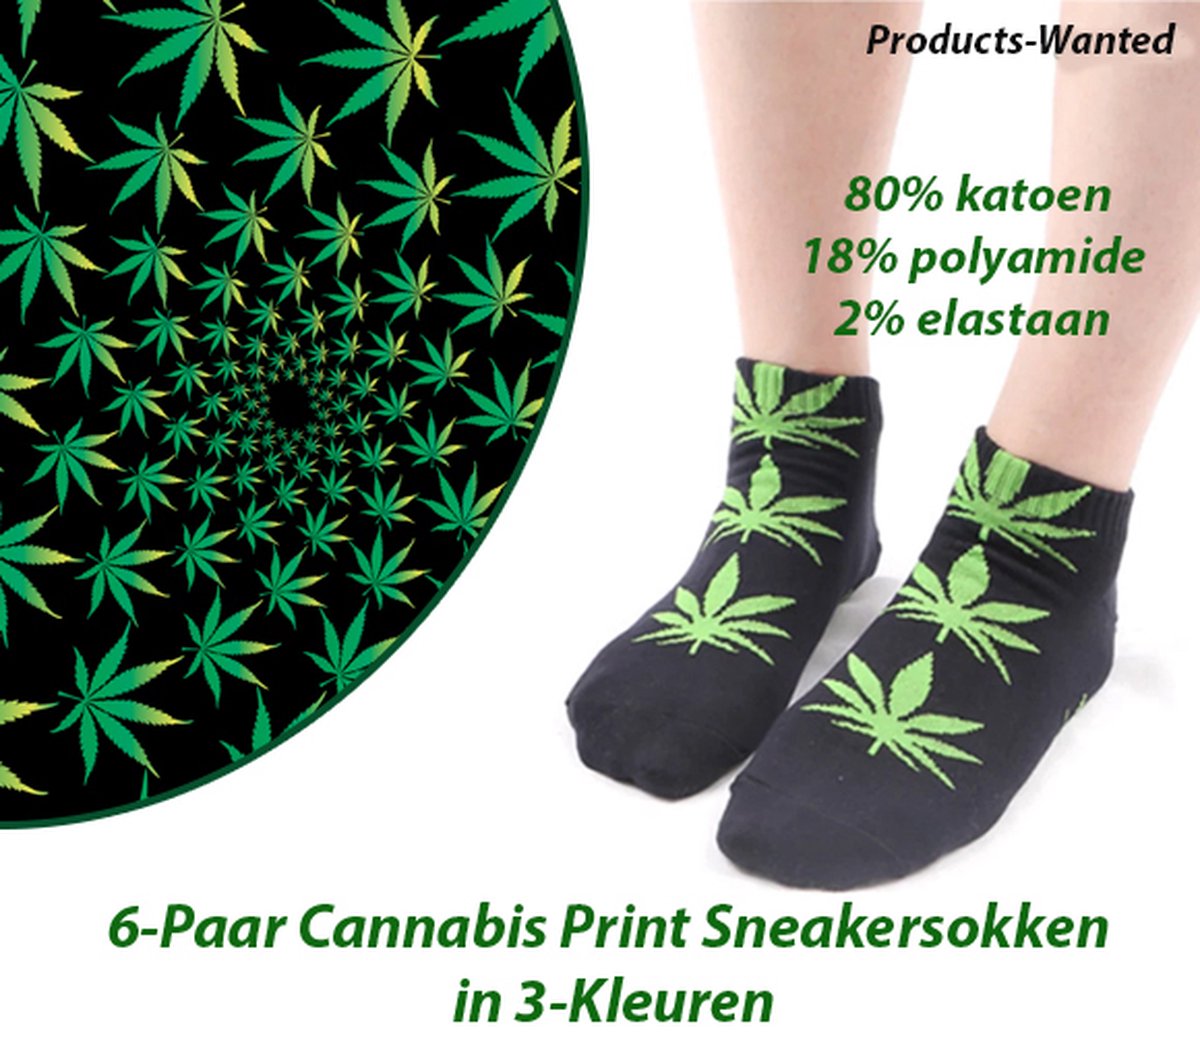 6-Paar Cannabis Print Sneakersokken in 3-Kleuren (40-46)